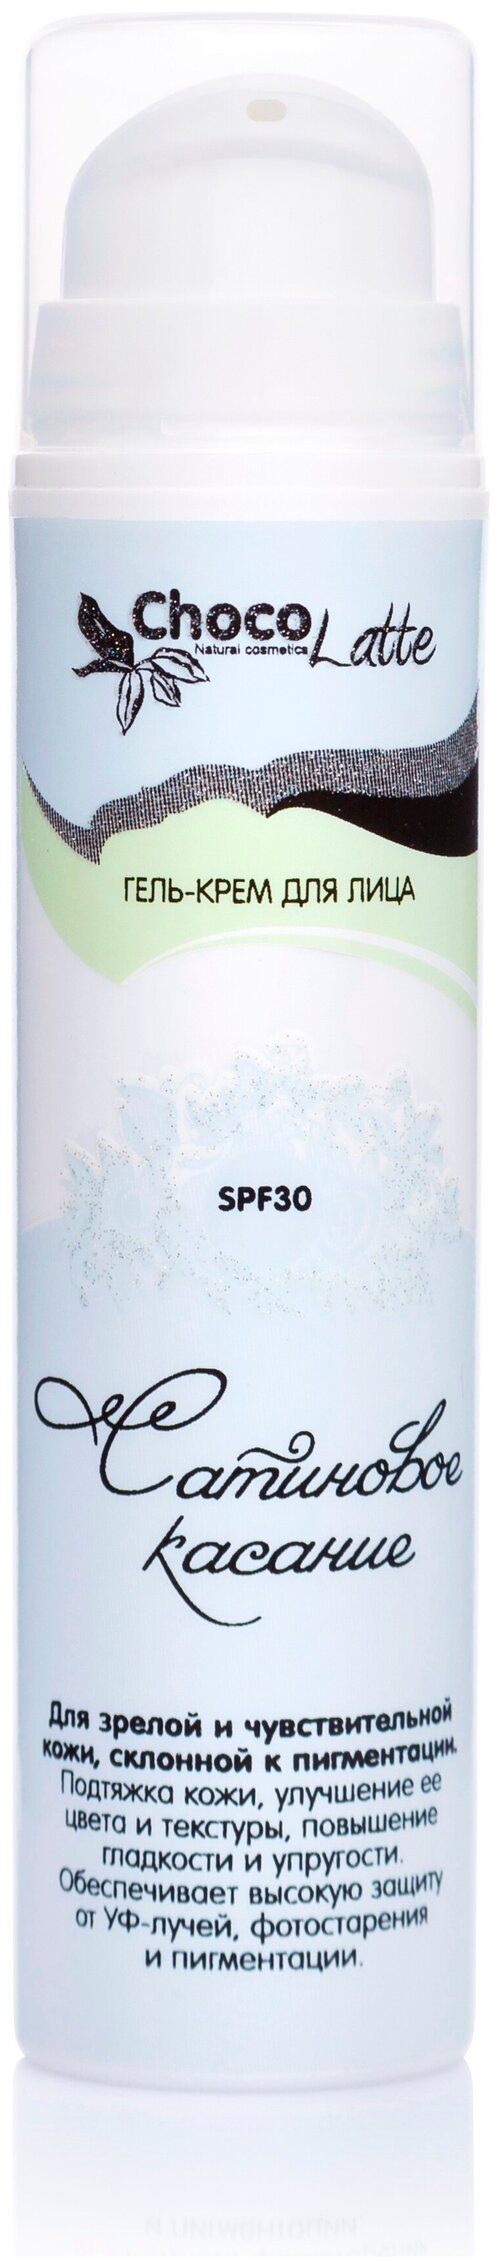 ChocoLatte гель-крем для лица Сатиновое Касание SPF 30, 50 мл